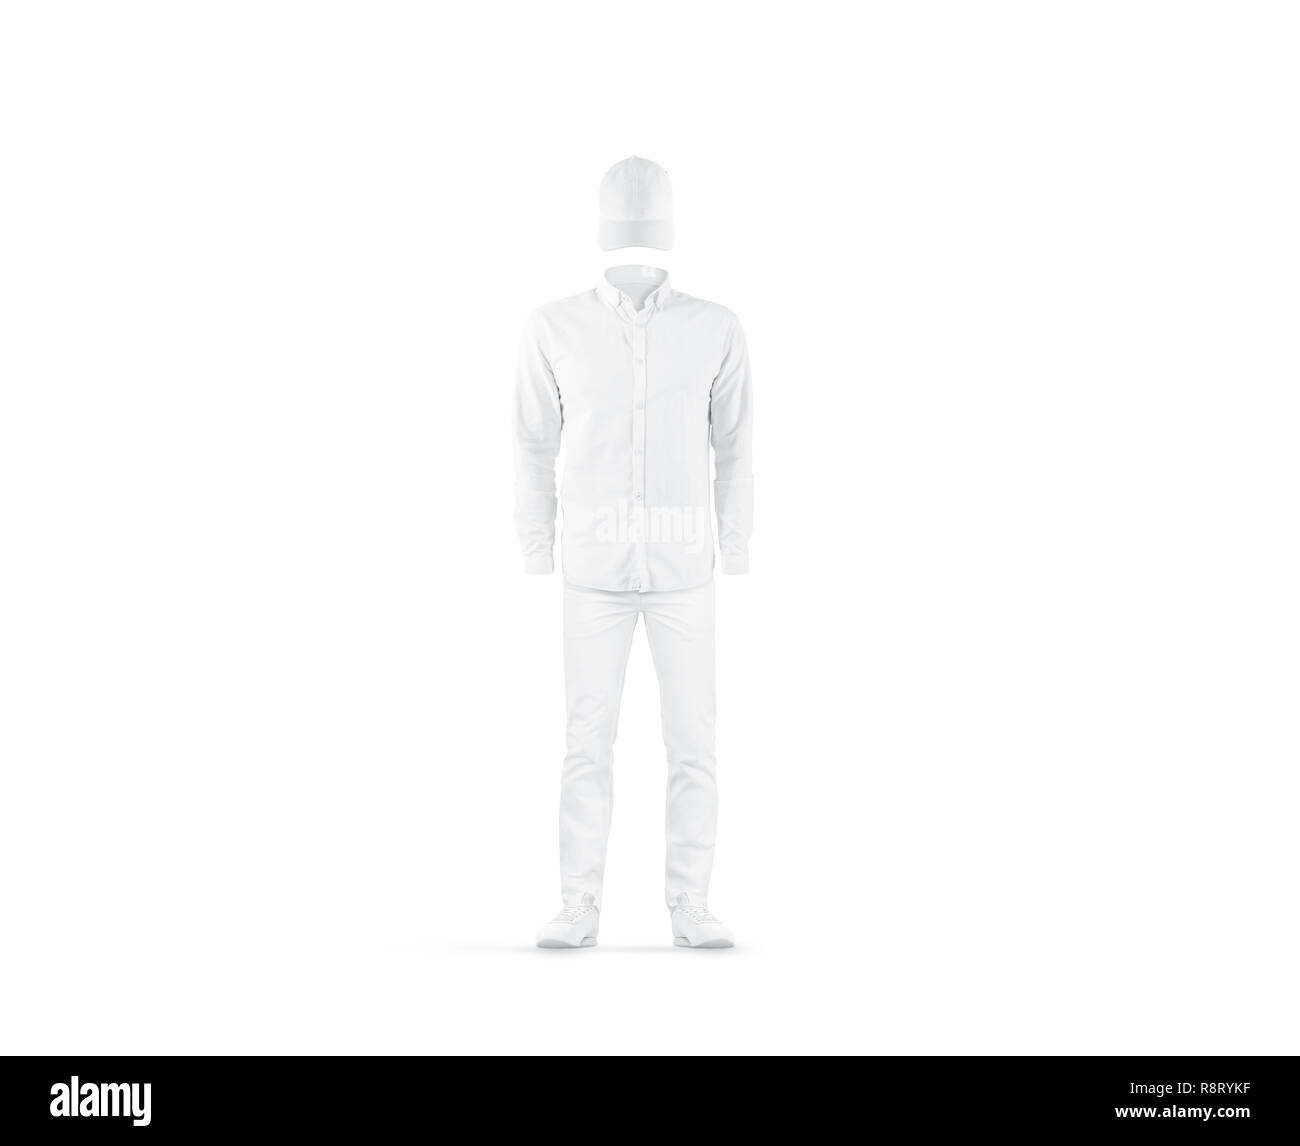 Leere weiße Uniform mock up, isoliert, Ansicht von vorne. Leere arbeit Anzug mockup. Klare klassische Shirt mit Hose und Turnschuhen Vorlage. Outfit für Lieferung oder Office Job. Stockfoto